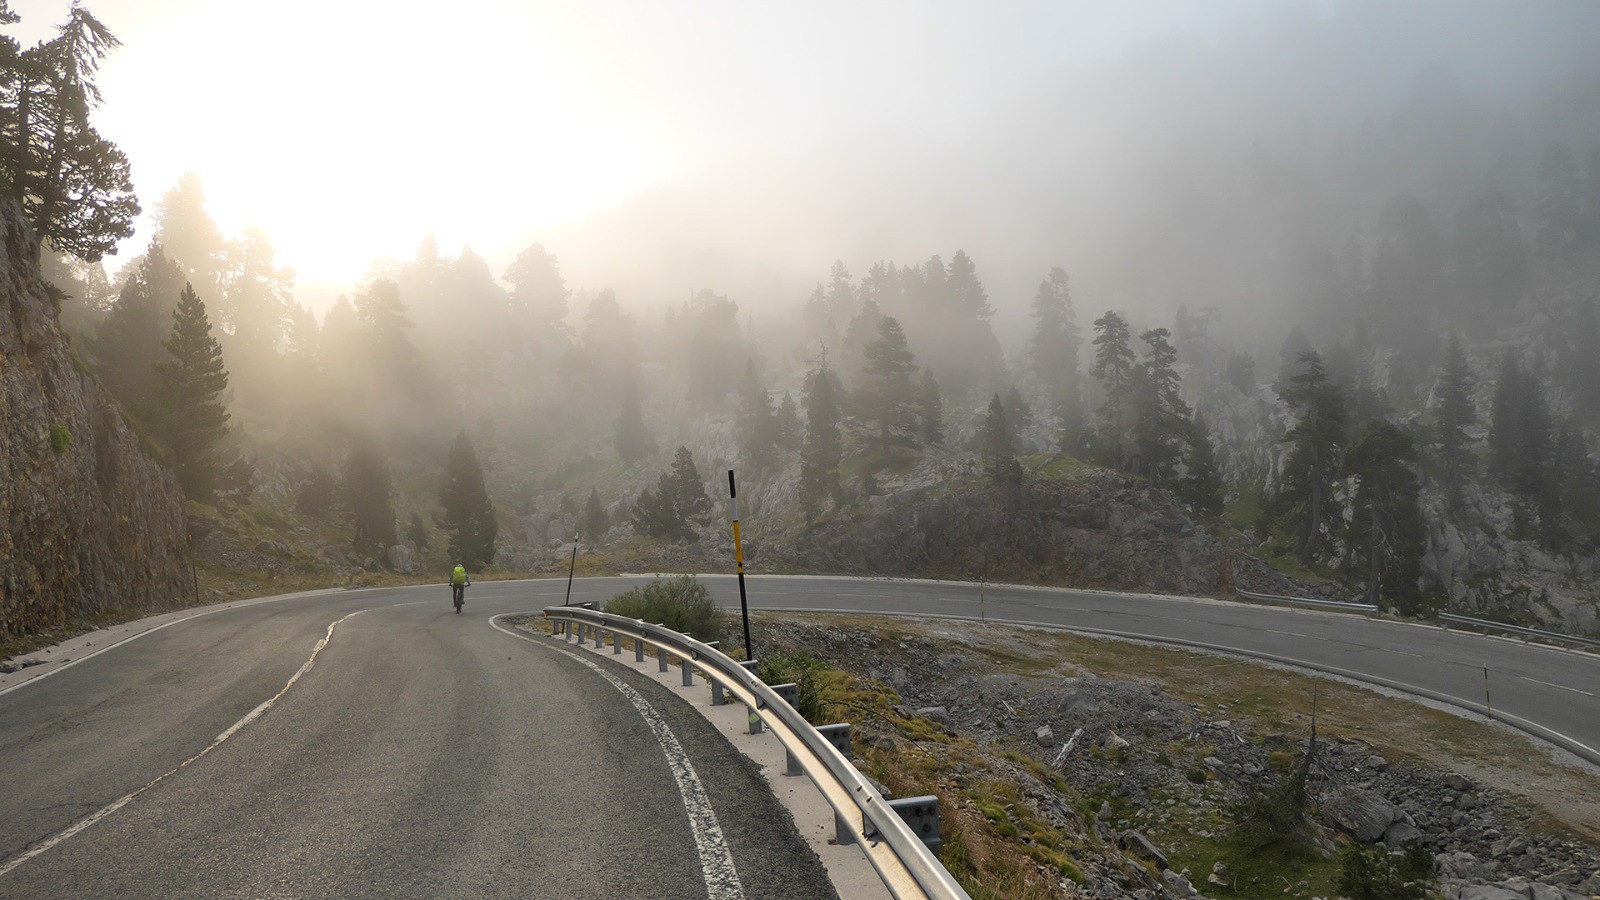 Versant espagnol, la route sinue dans le karst. Dommage que le brouillard nous empêche de jouir pleinement de ces paysages qui semblent superbes.